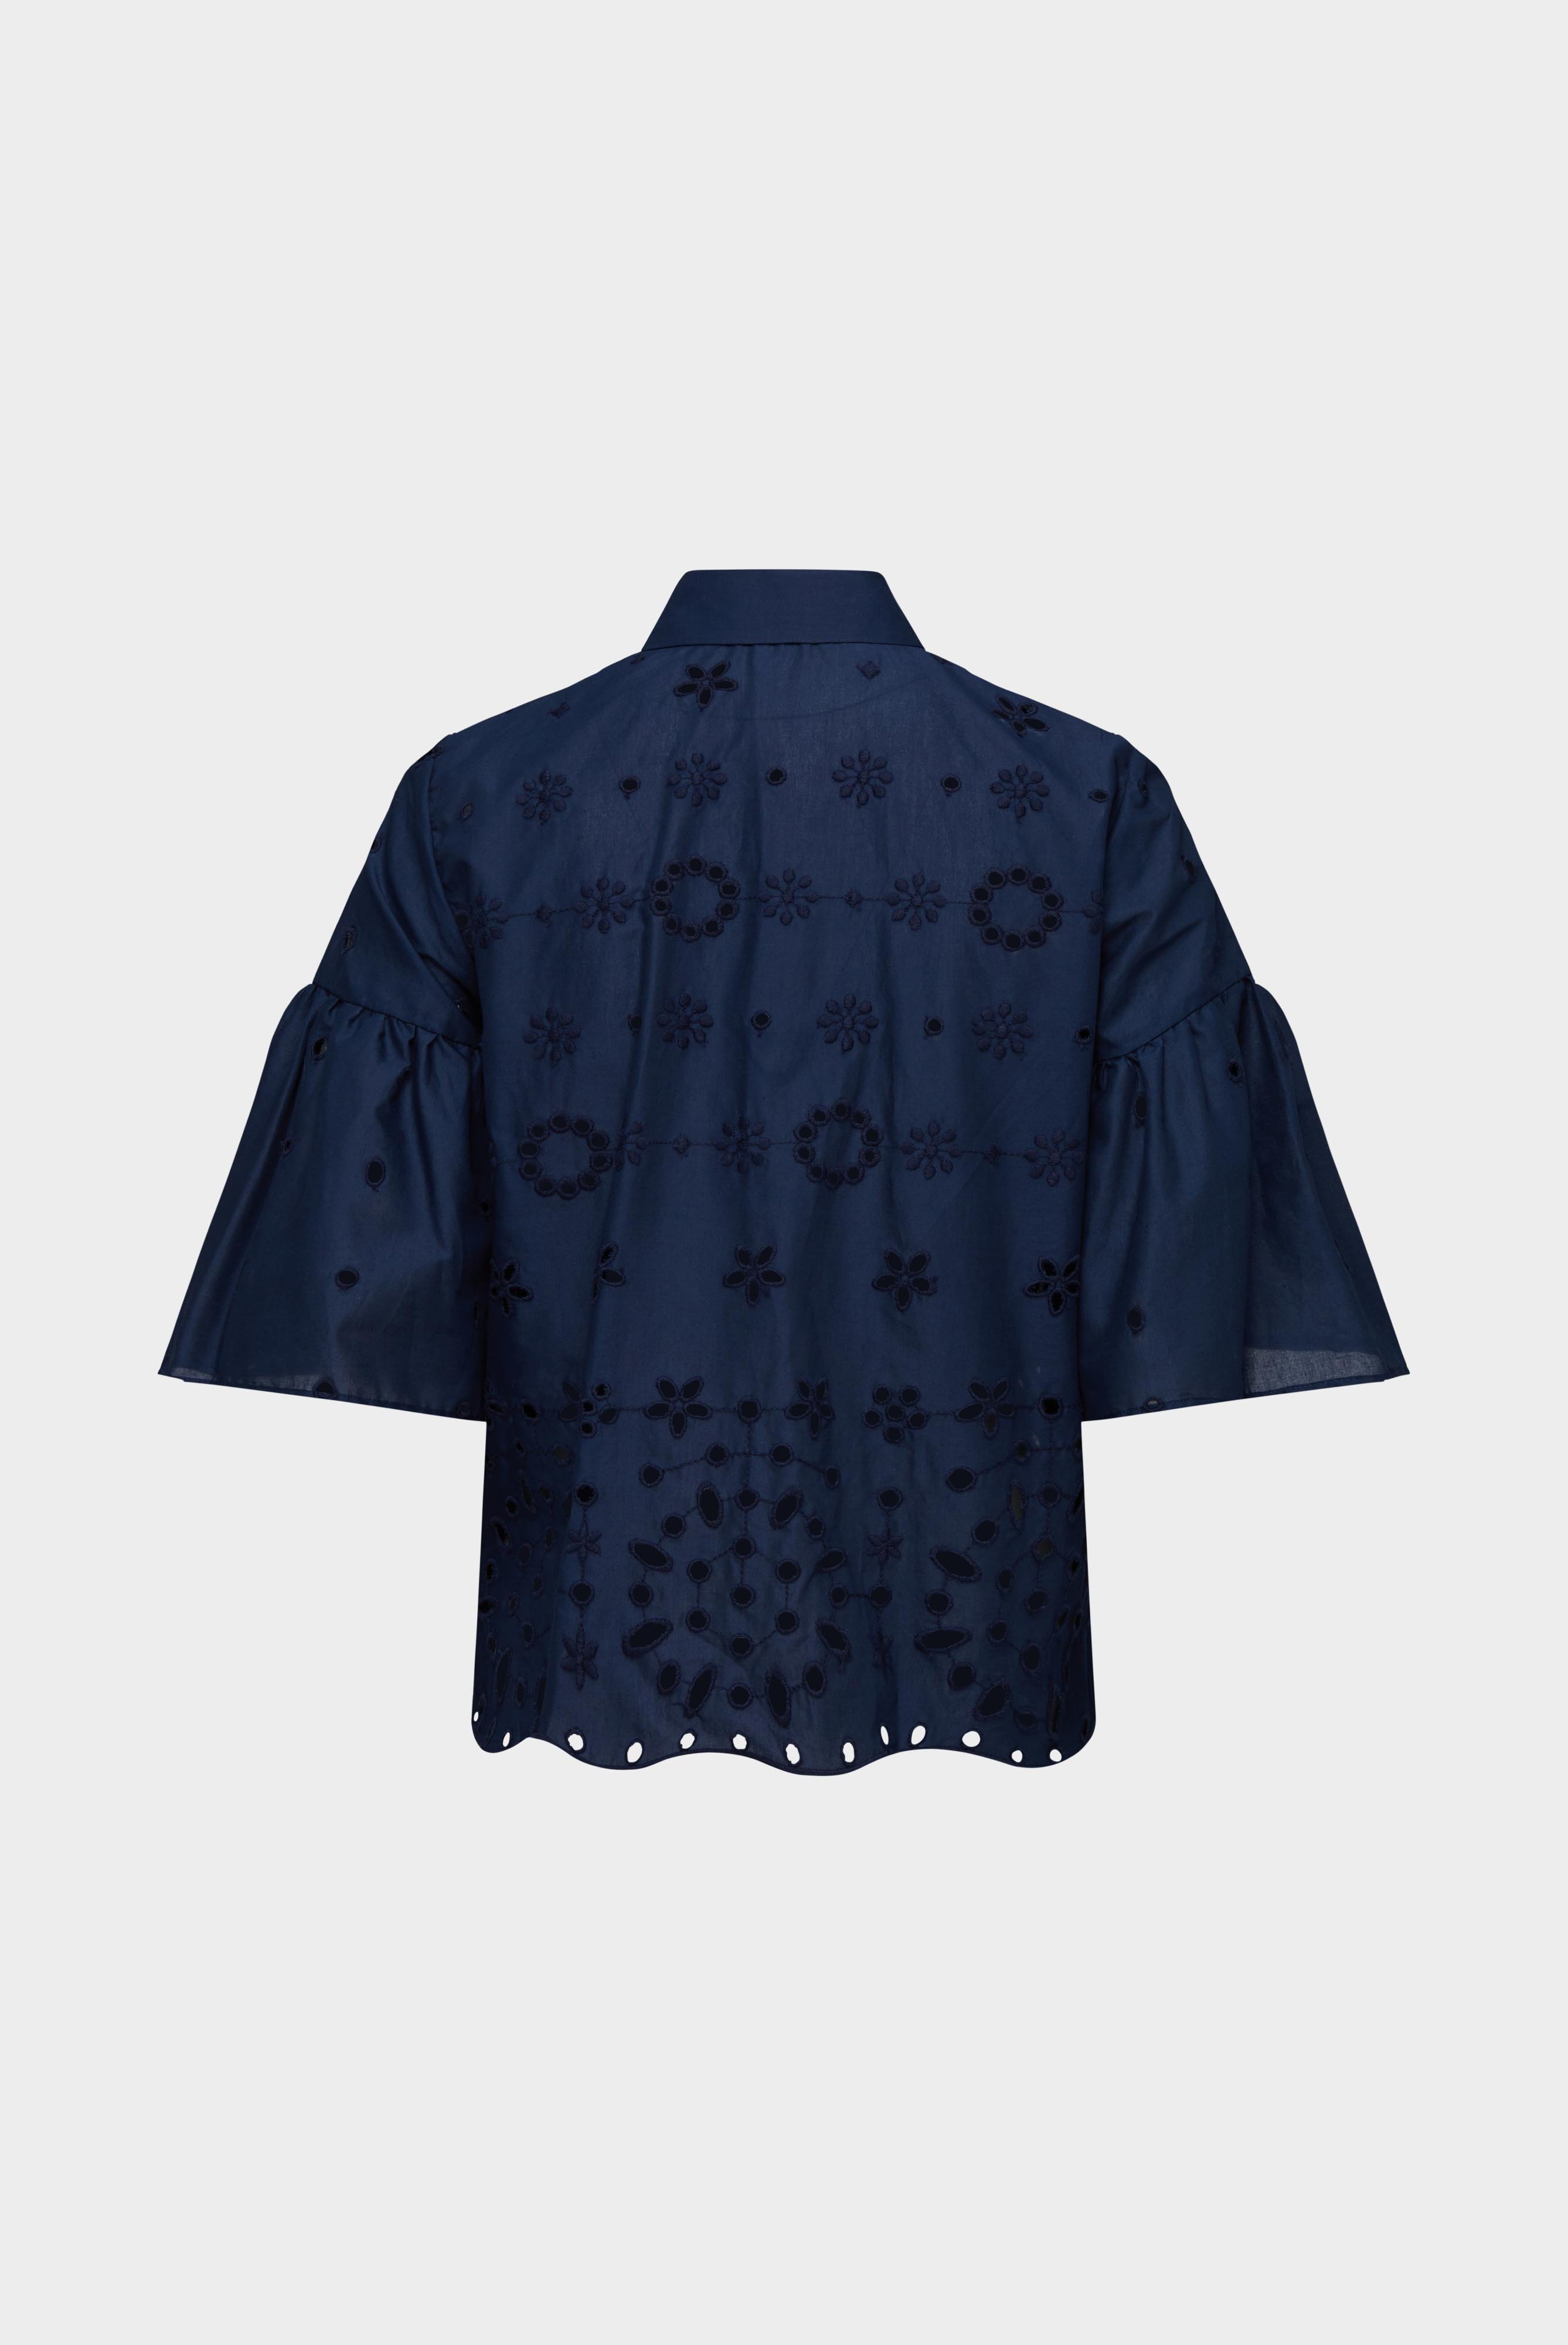 Casual Blusen+A-Linien Bluse mit Rüschendetails und Stickereien aus Baumwolle Blau+05.525V.5X.150228.790.32